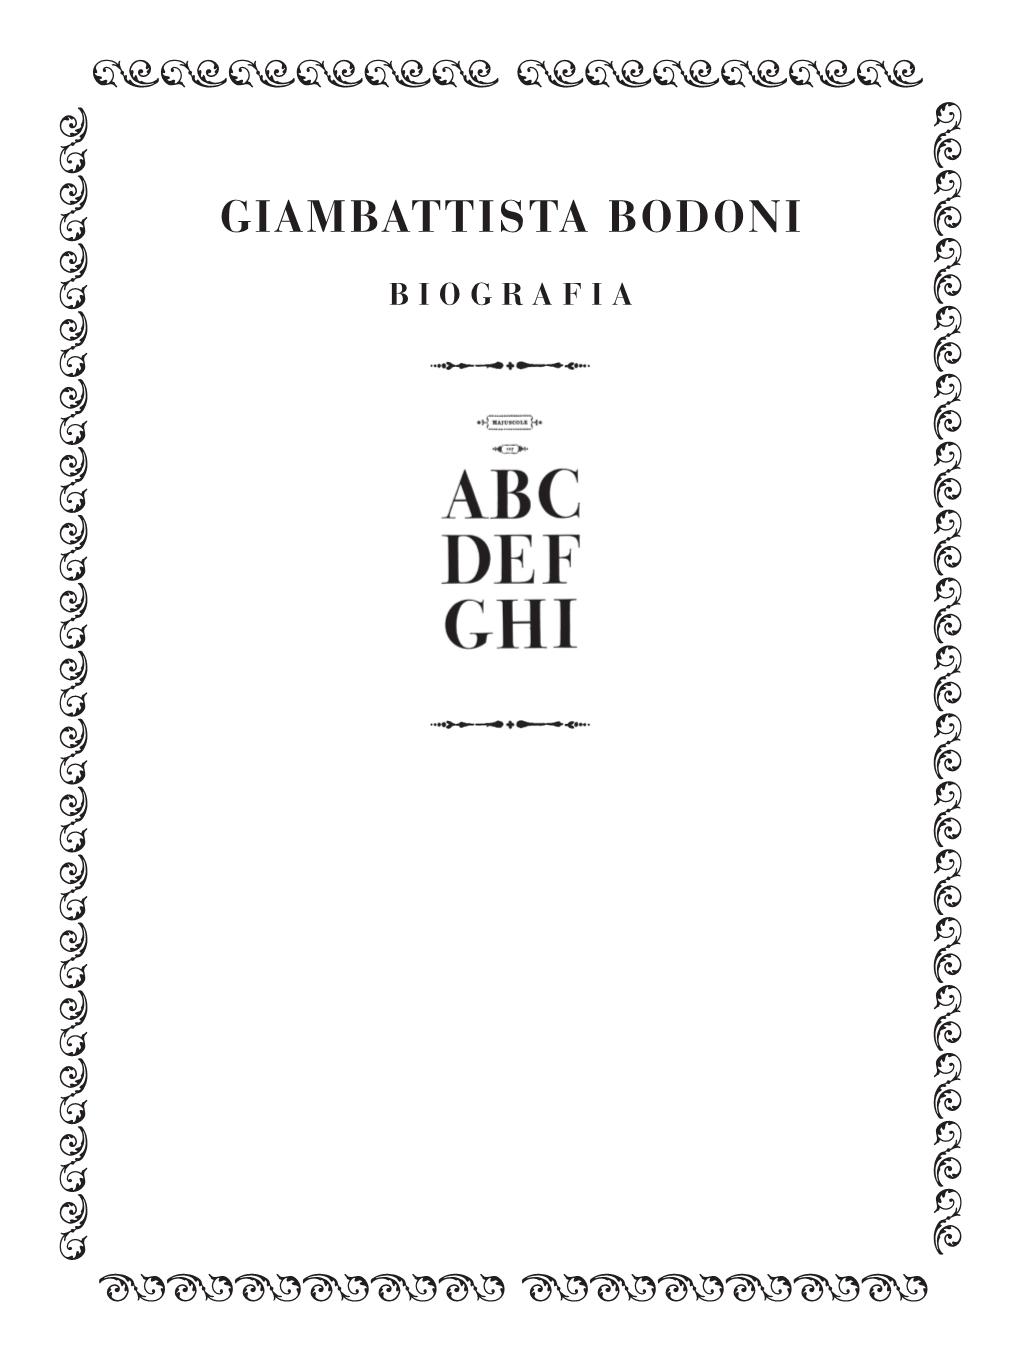 Giambattista Bodoni—Biografia